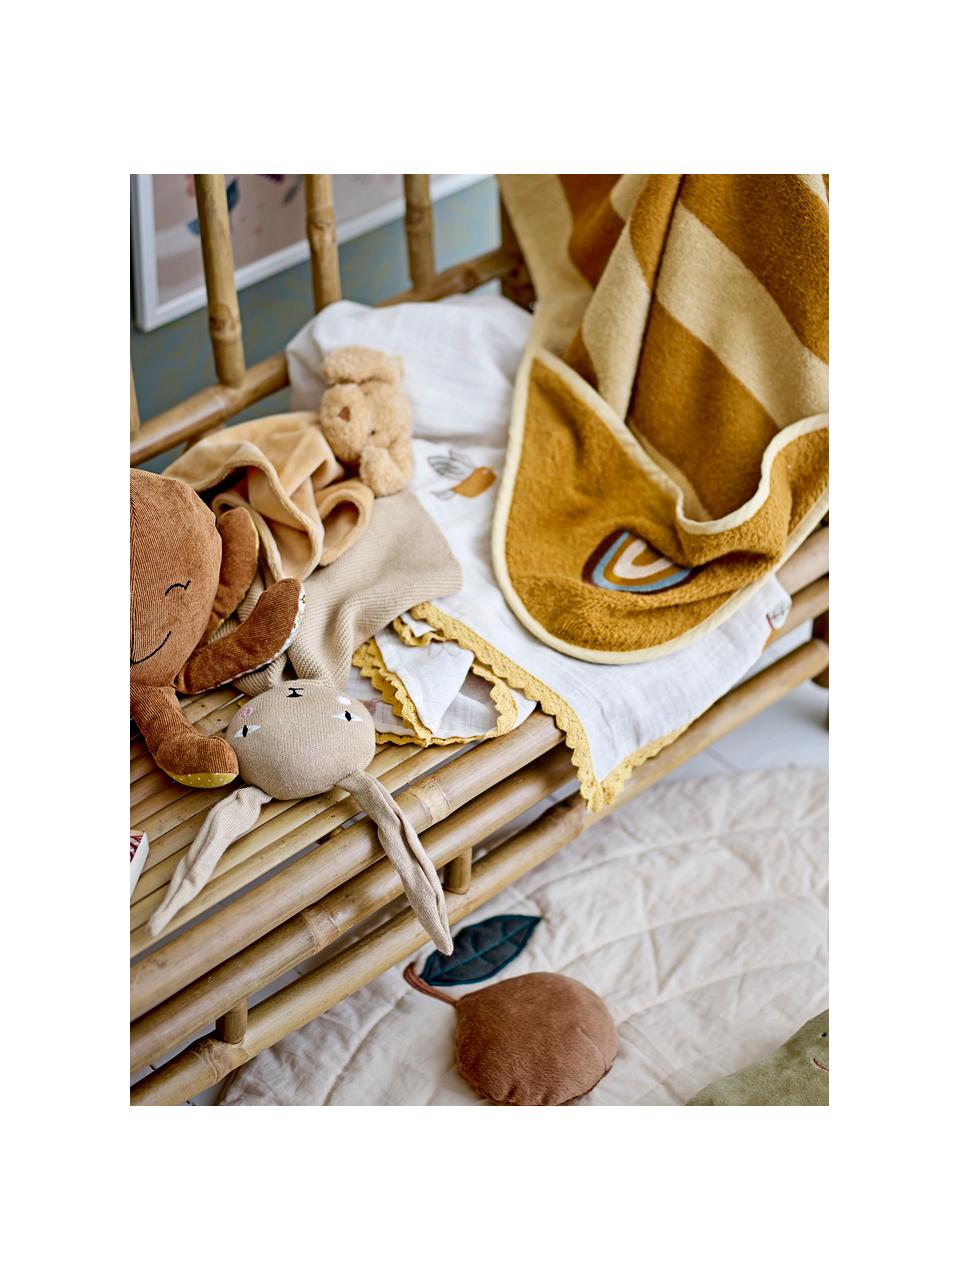 Leichte Baby-Decke Agnes, 80 % Baumwolle, 20 % Polyester, Weiss, Bunt, B 80 x L 100 cm